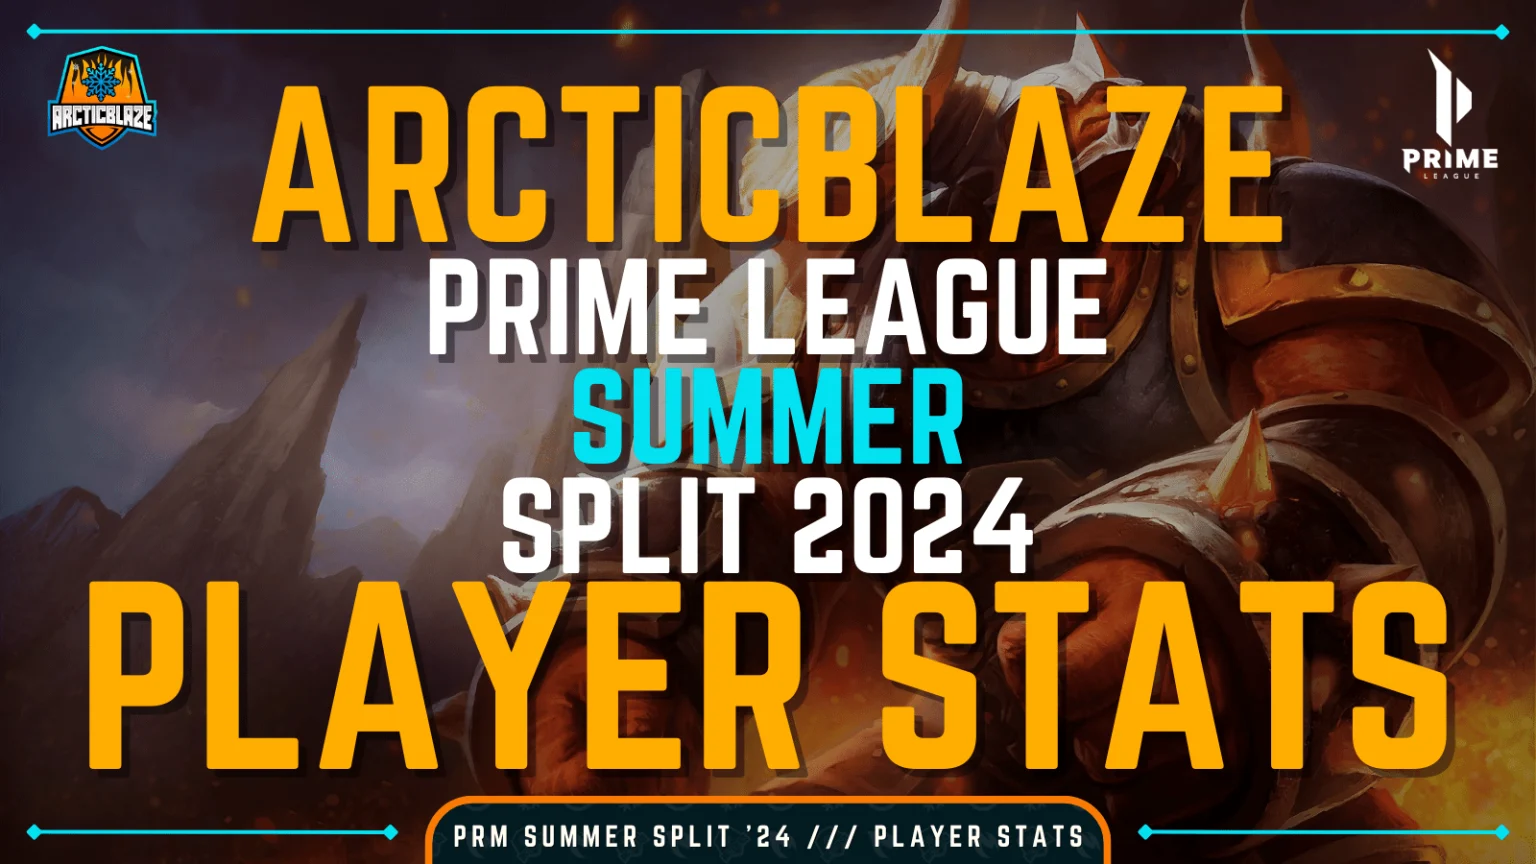 ArcticBlaze Prime League Summer 2024 Player Stats